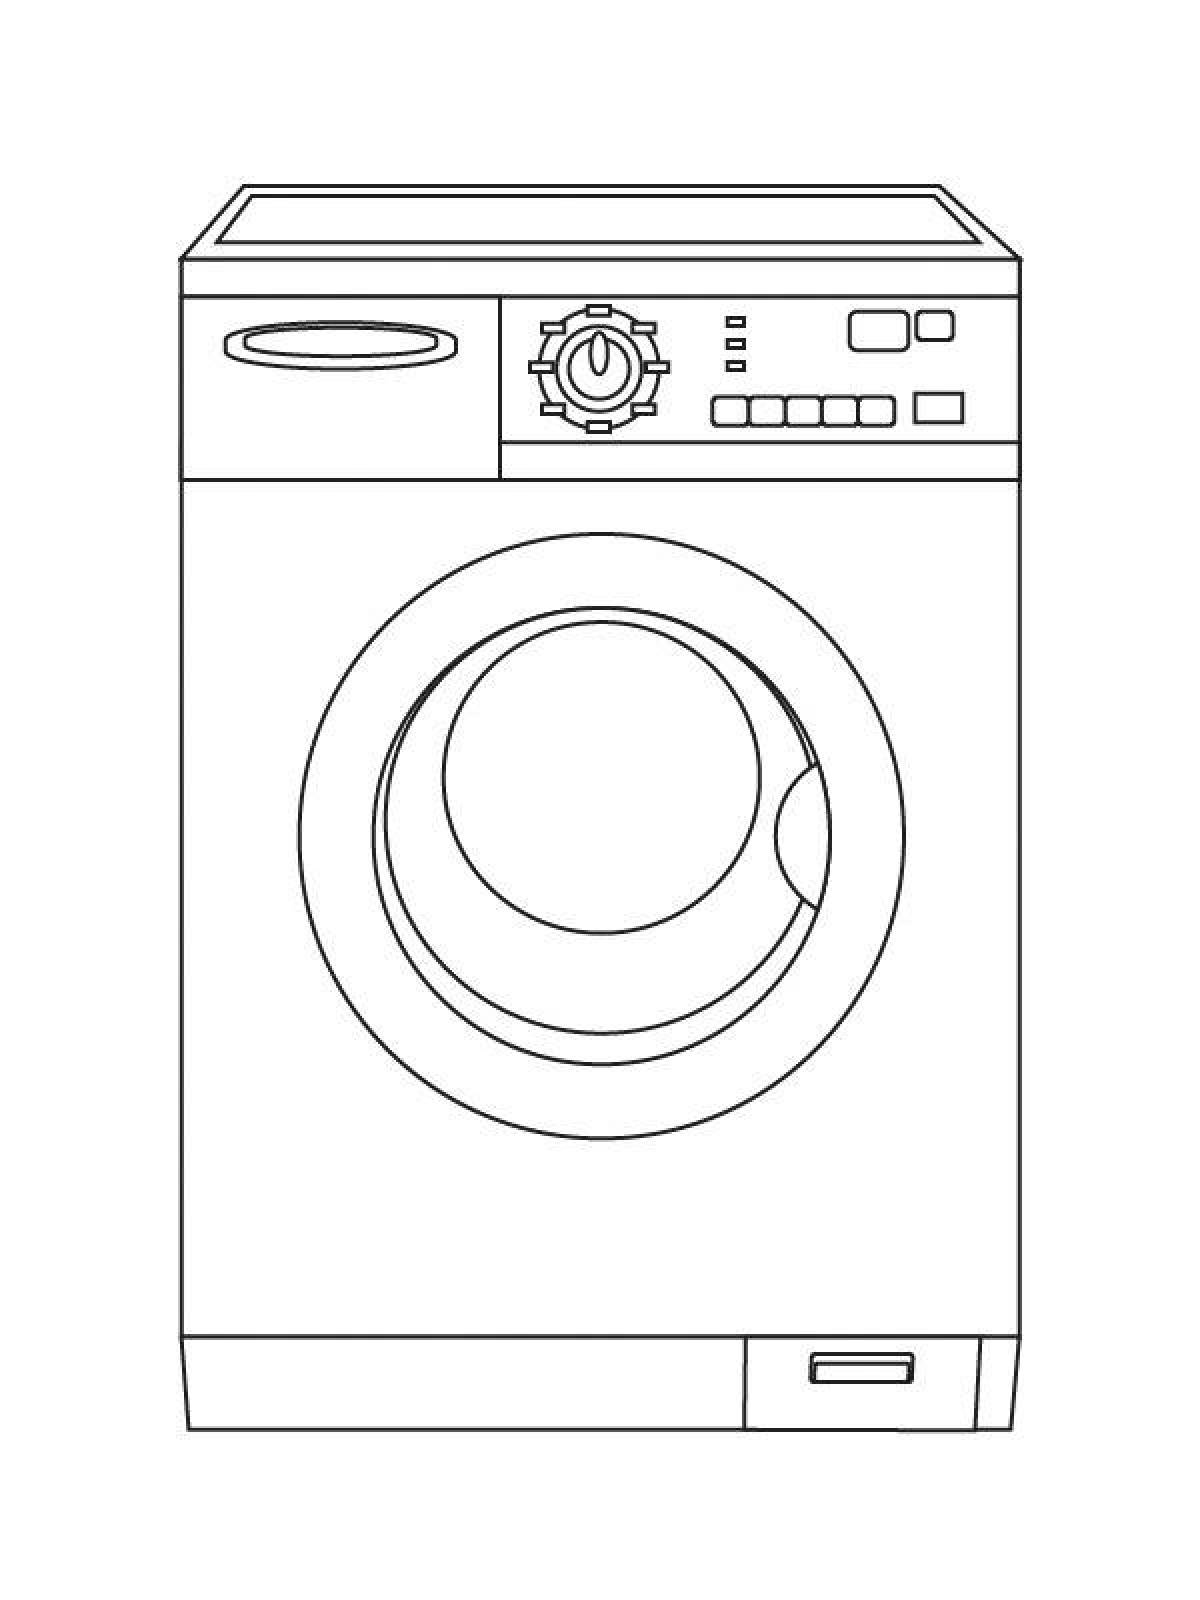 Wonderful washing machine coloring page